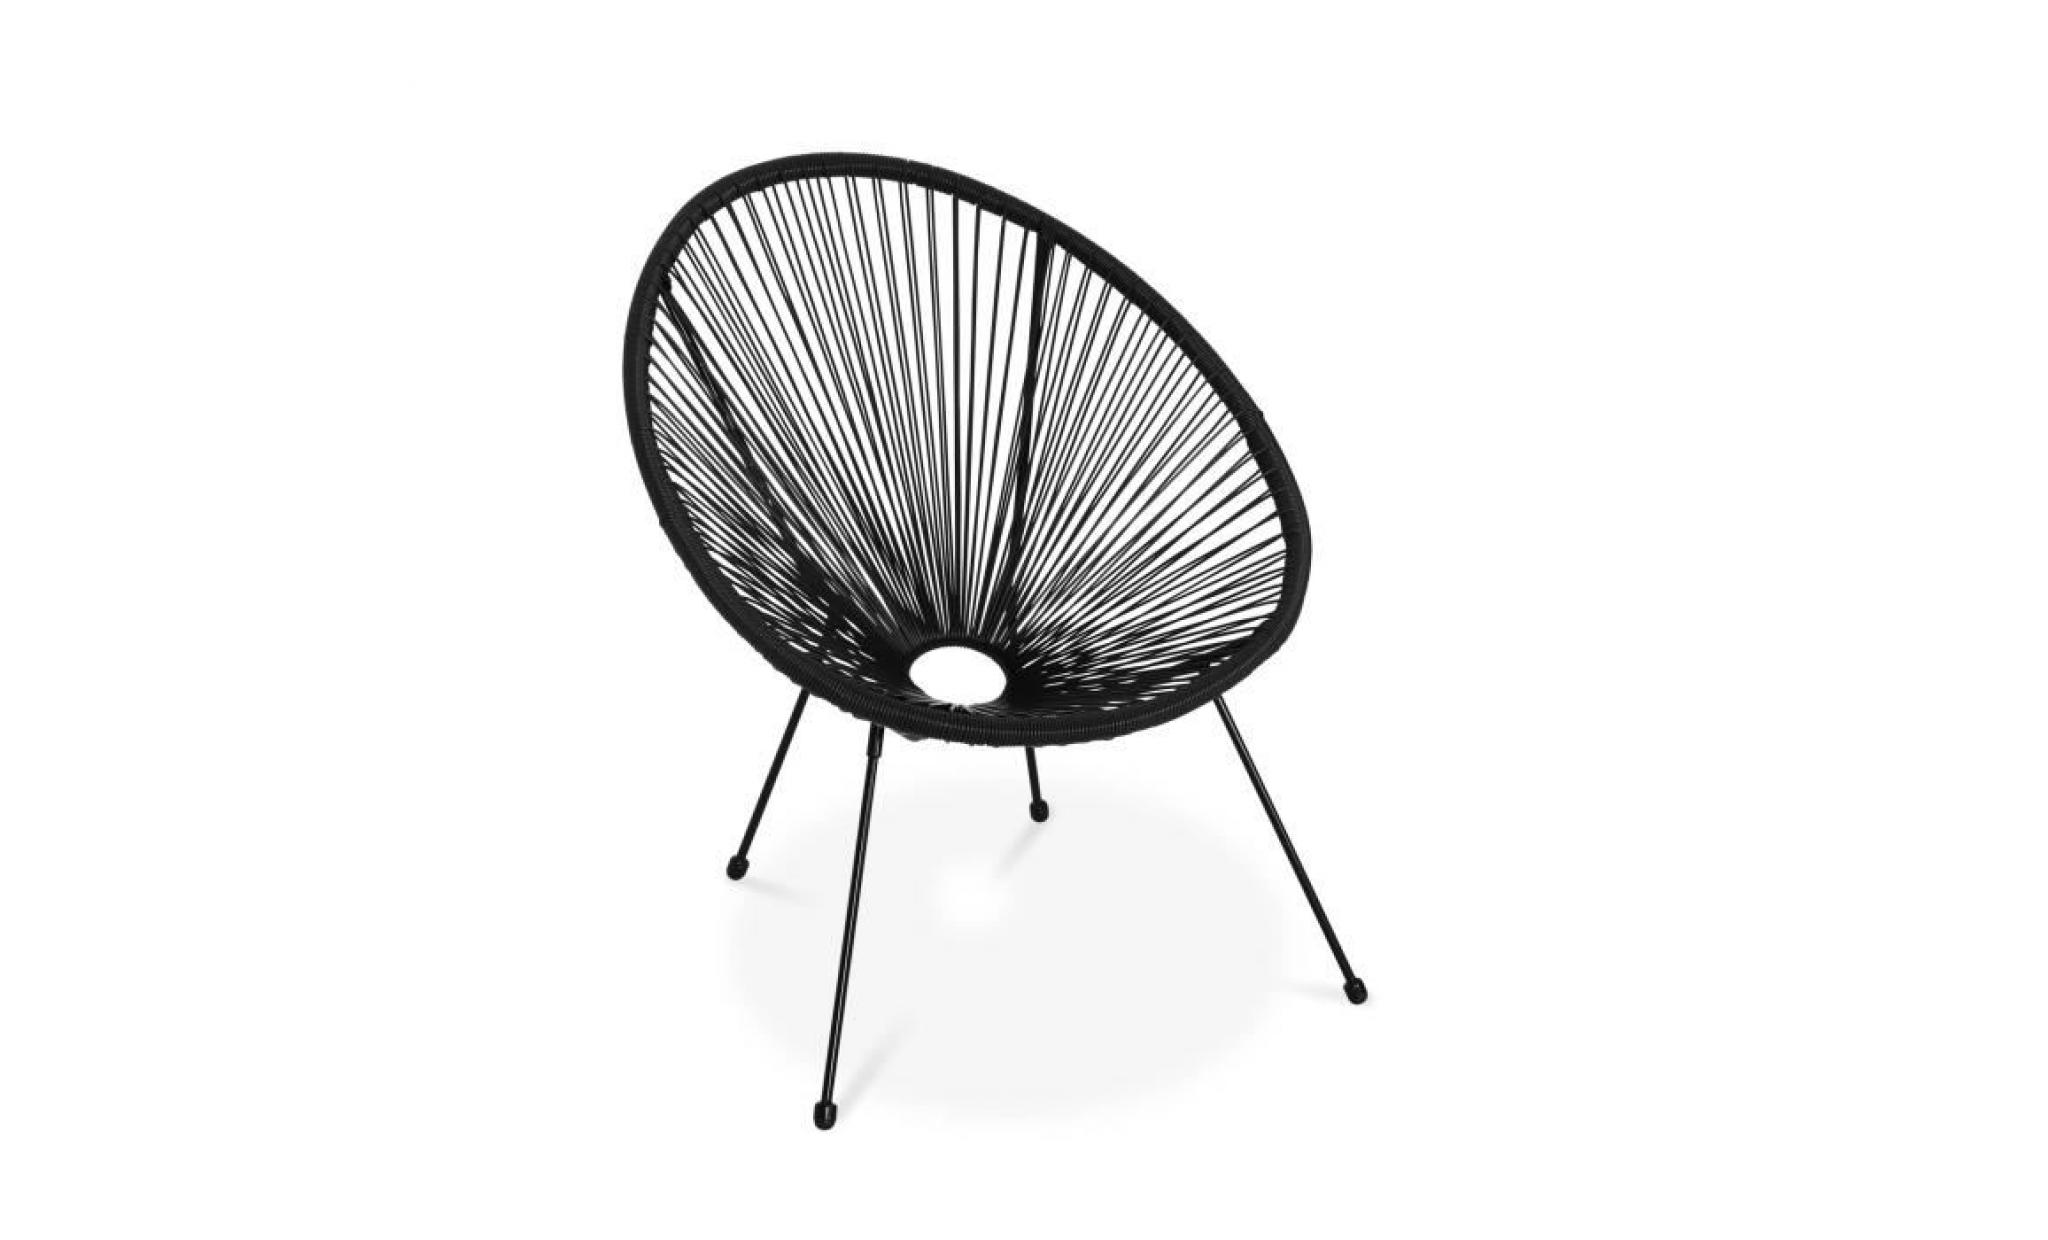 fauteuil acapulco forme d'oeuf   noir   fauteuil 4 pieds design rétro, cordage plastique, intérieur / extérieur